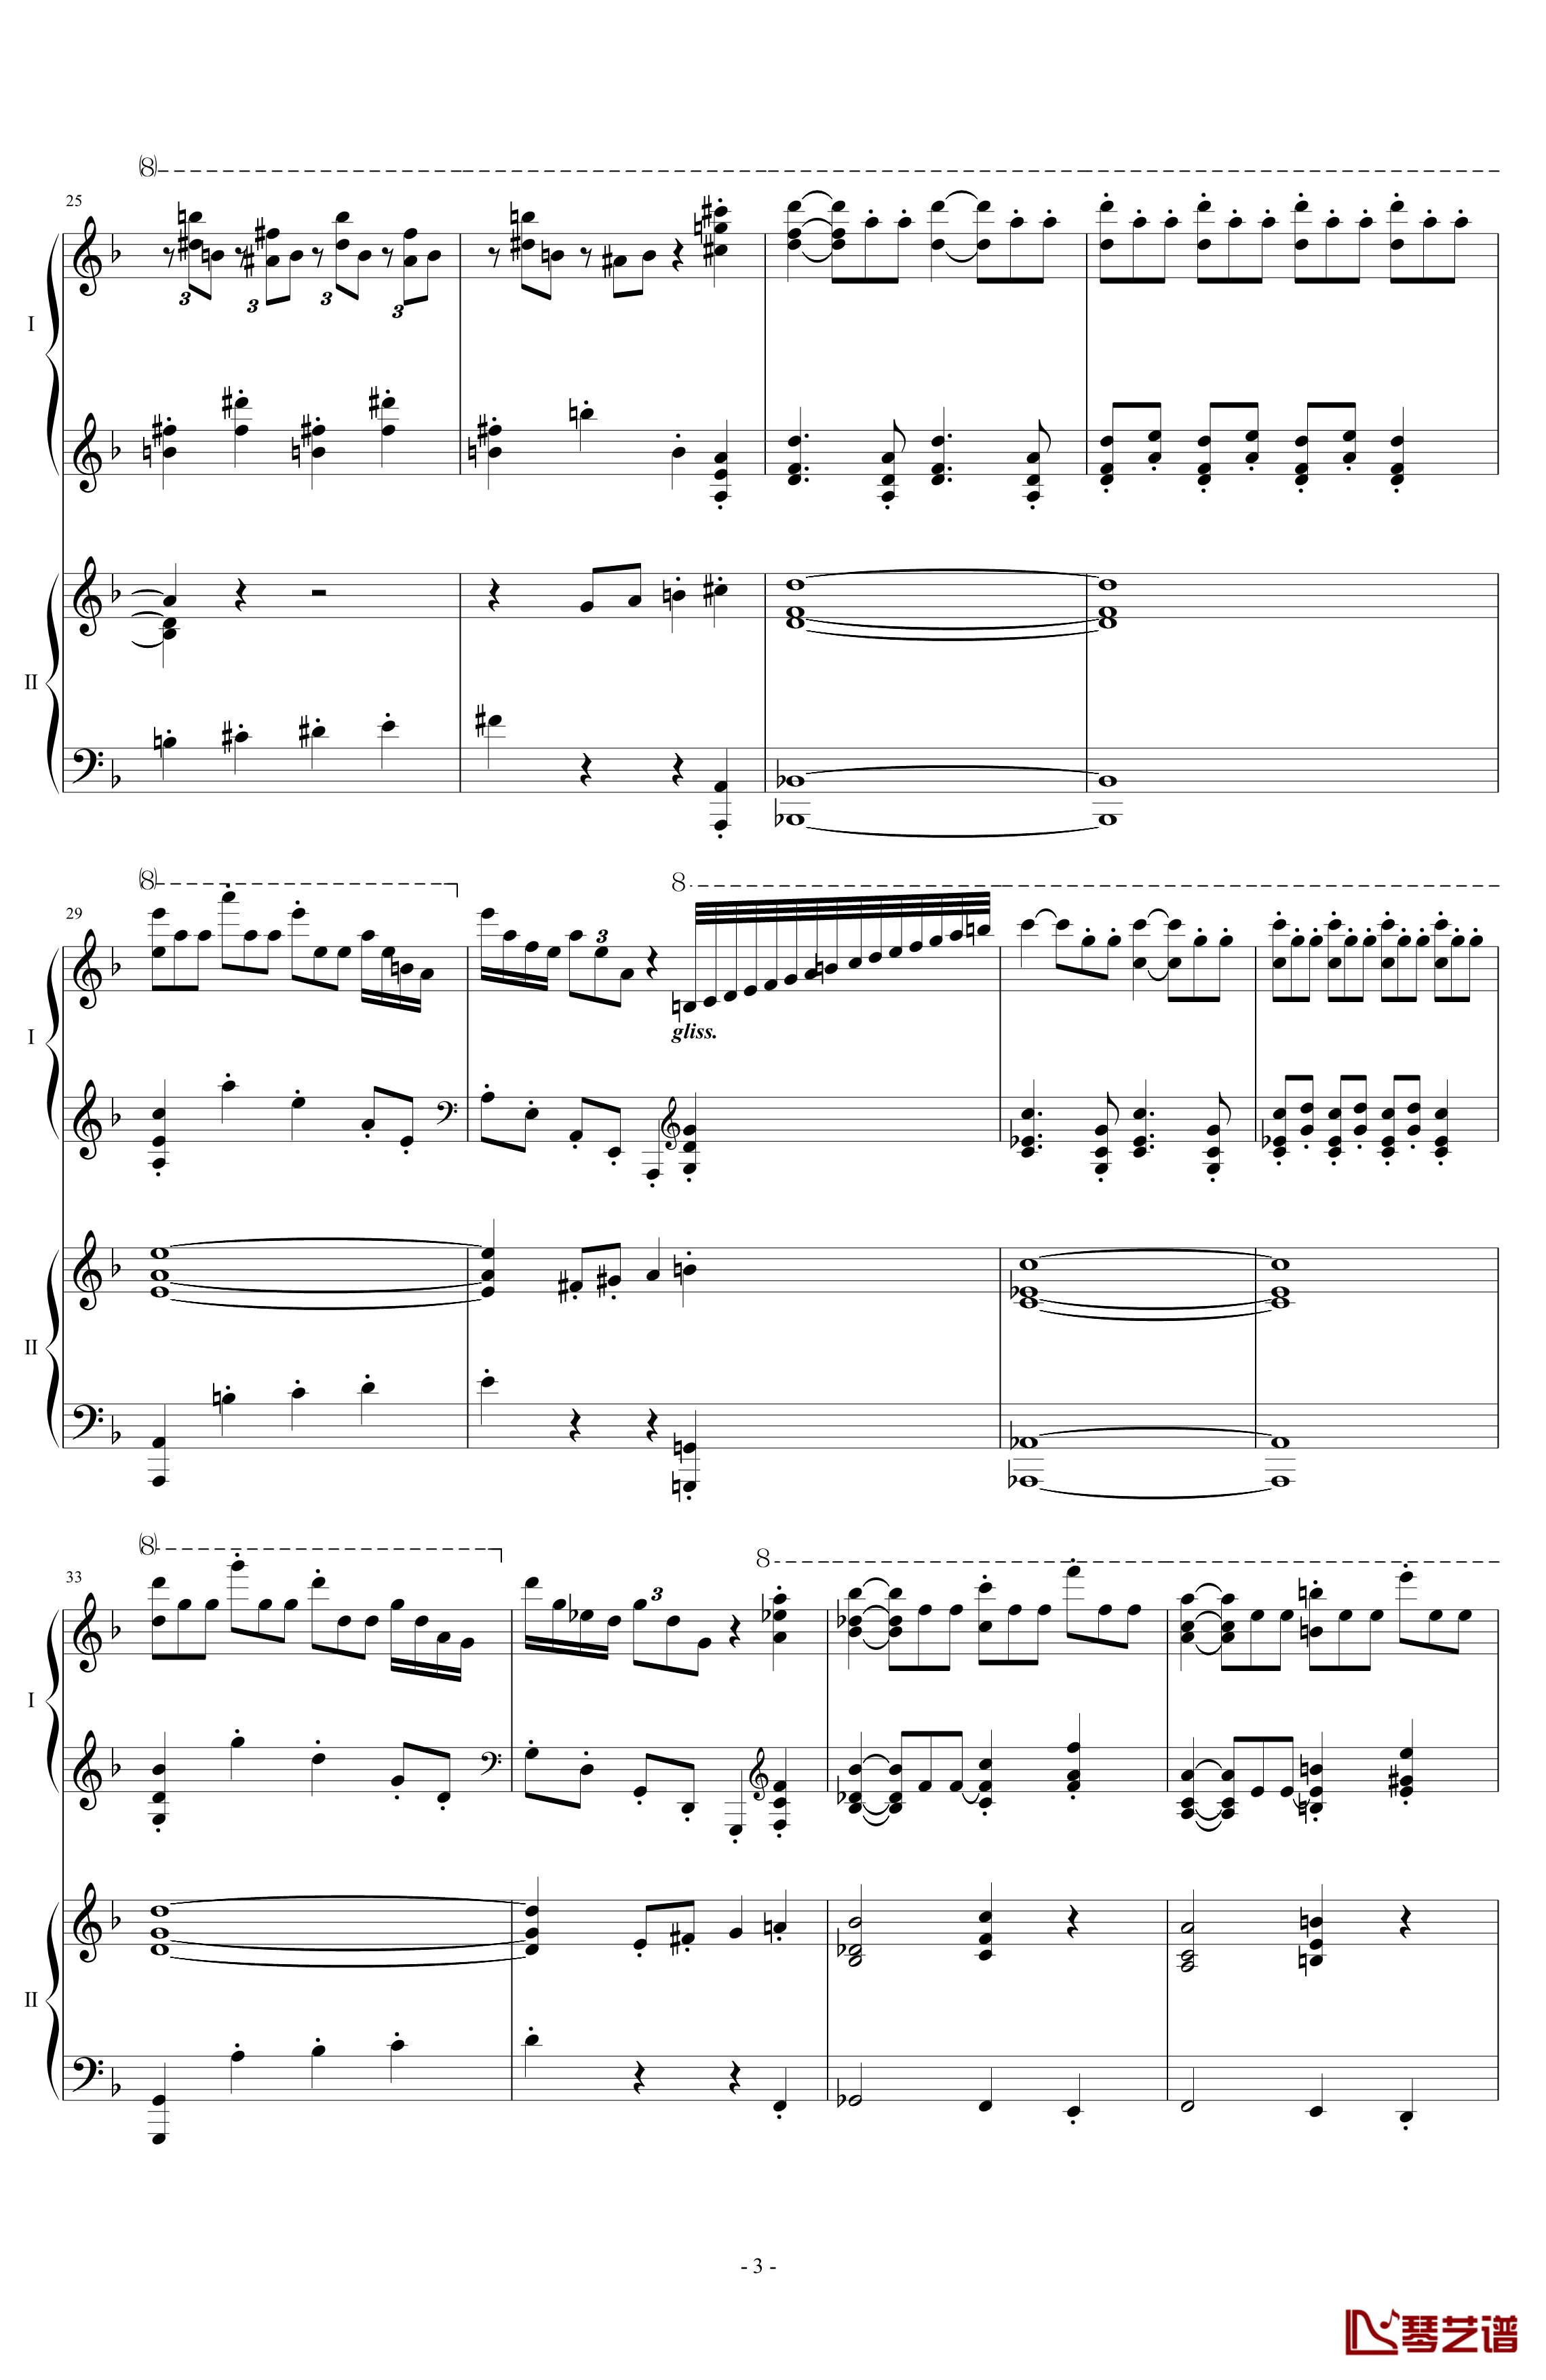 拉三第三乐章41页双钢琴钢琴谱-最难钢琴曲-拉赫马尼若夫3